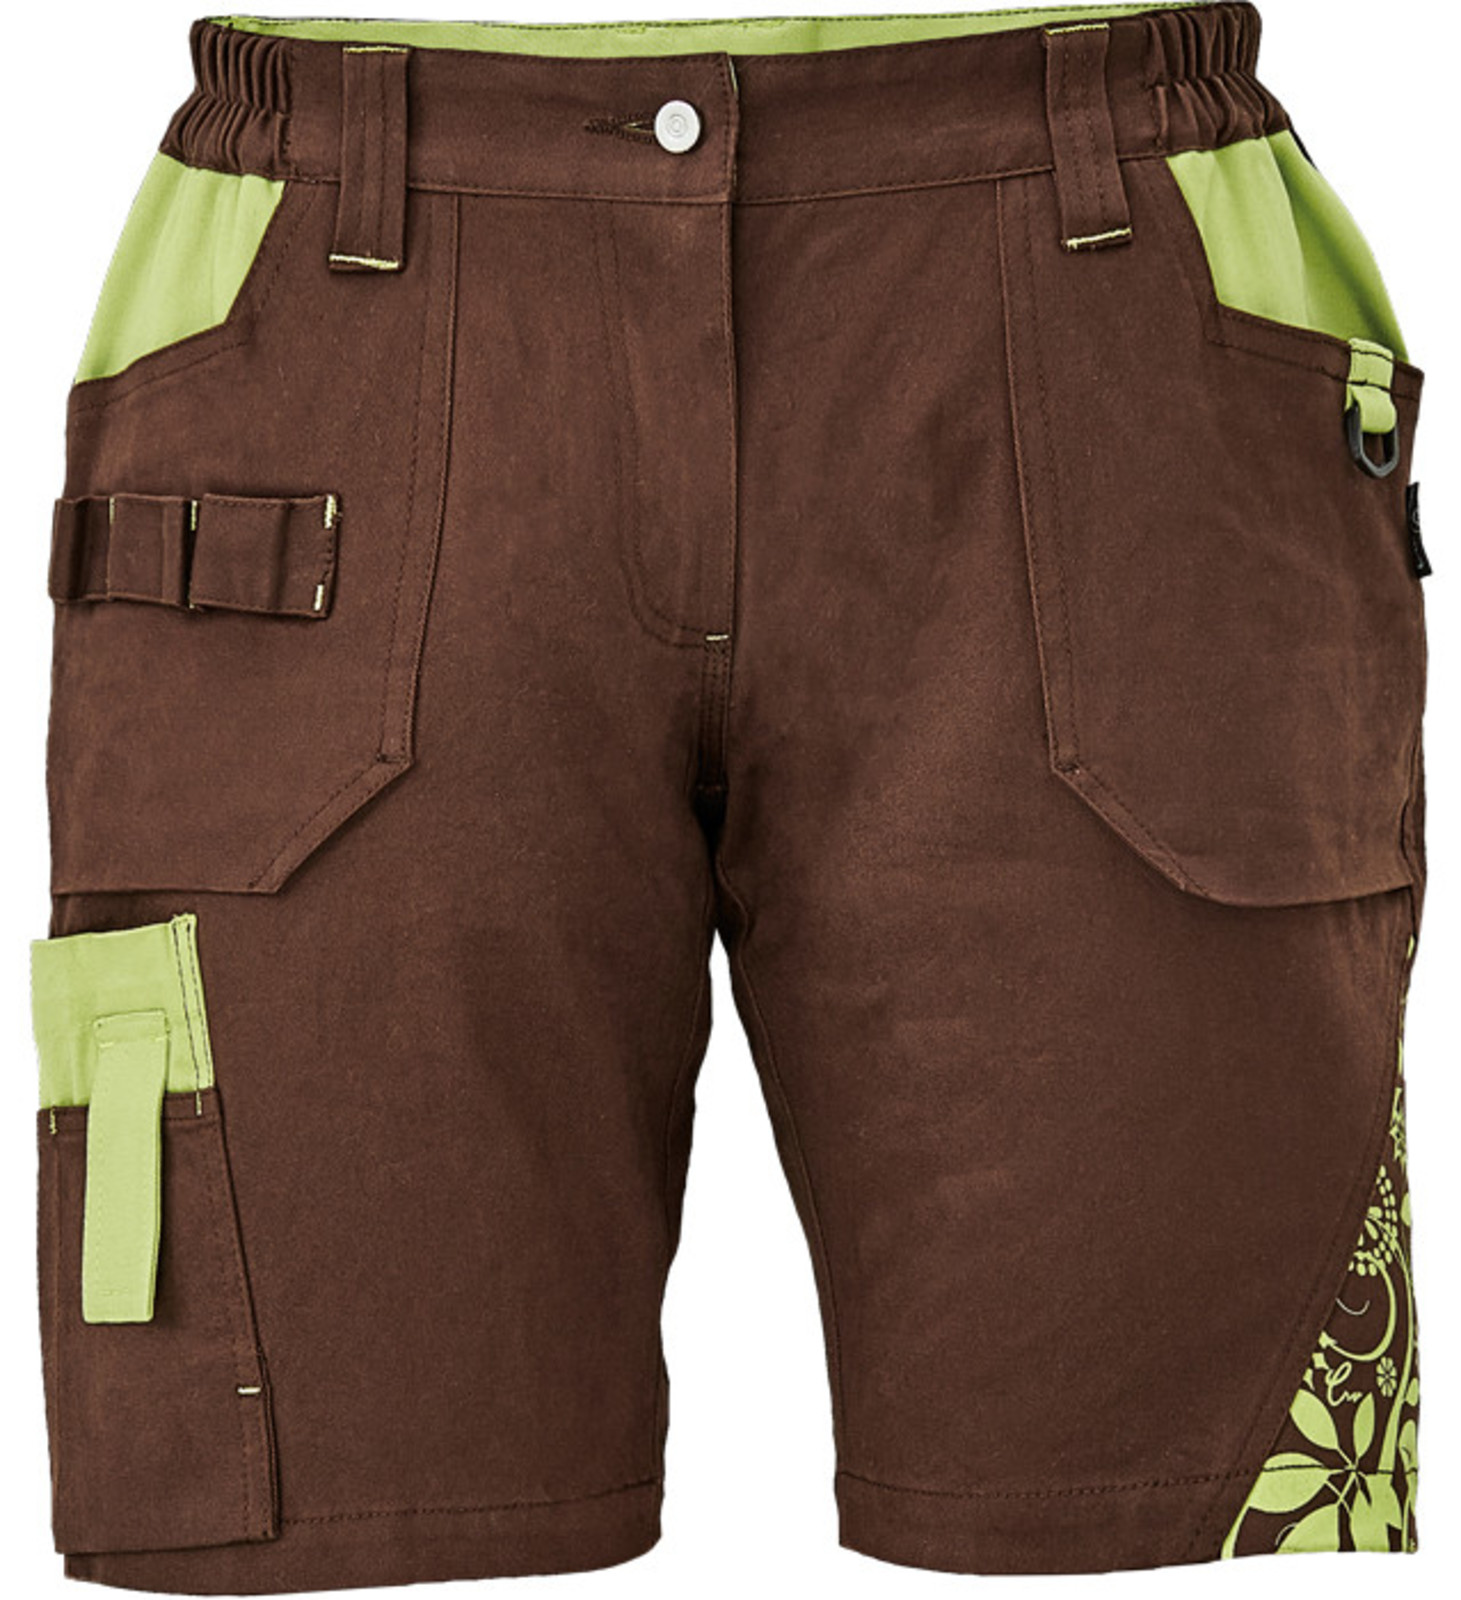 Dámske pracovné šortky Cerva Yowie - veľkosť: 44, farba: hnedá/zelená